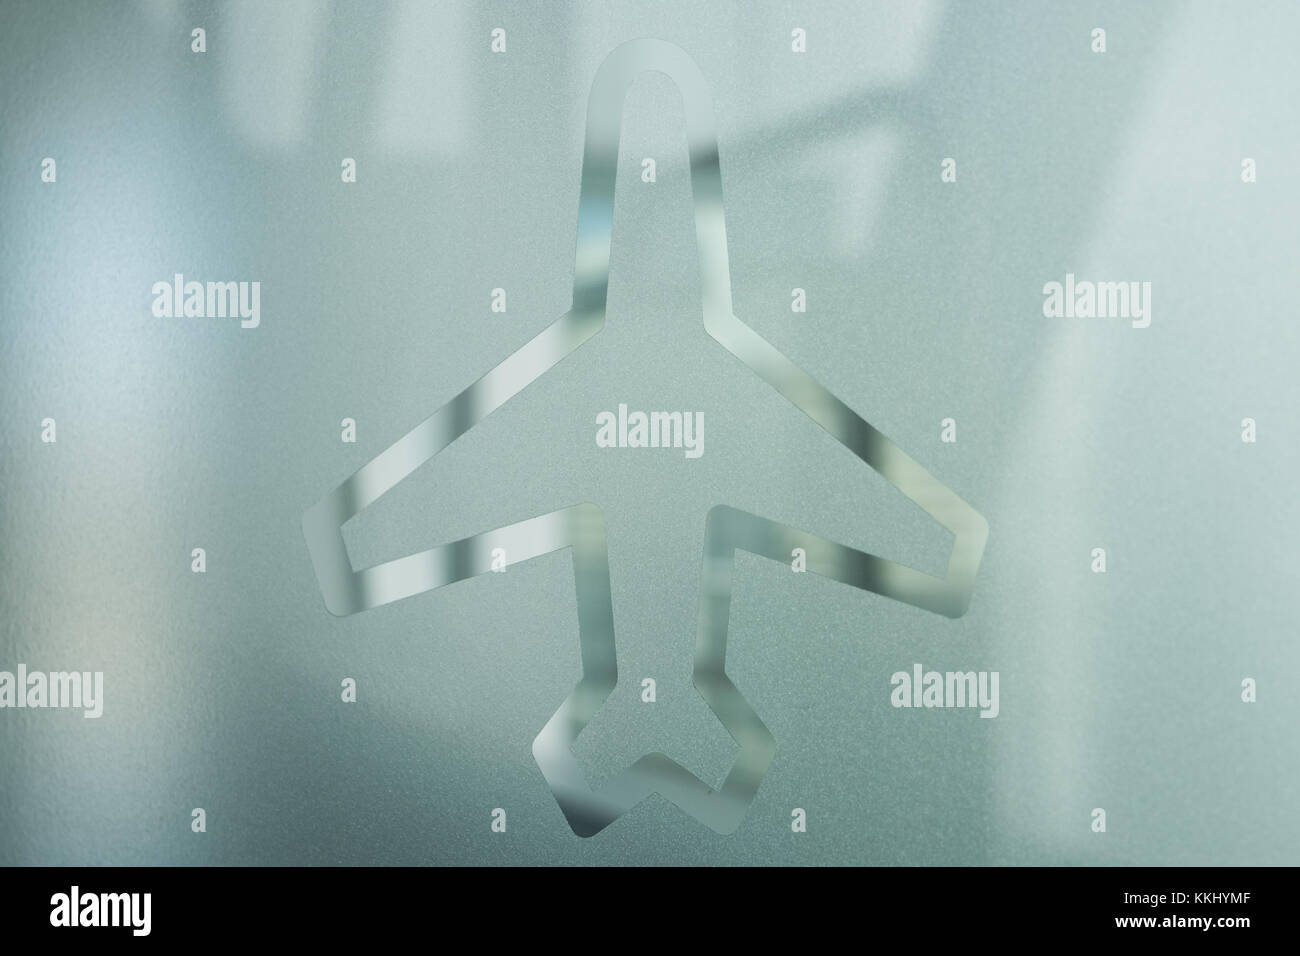 Flugzeug Symbol auf Glas Fenster, Flughafen - Stockfoto